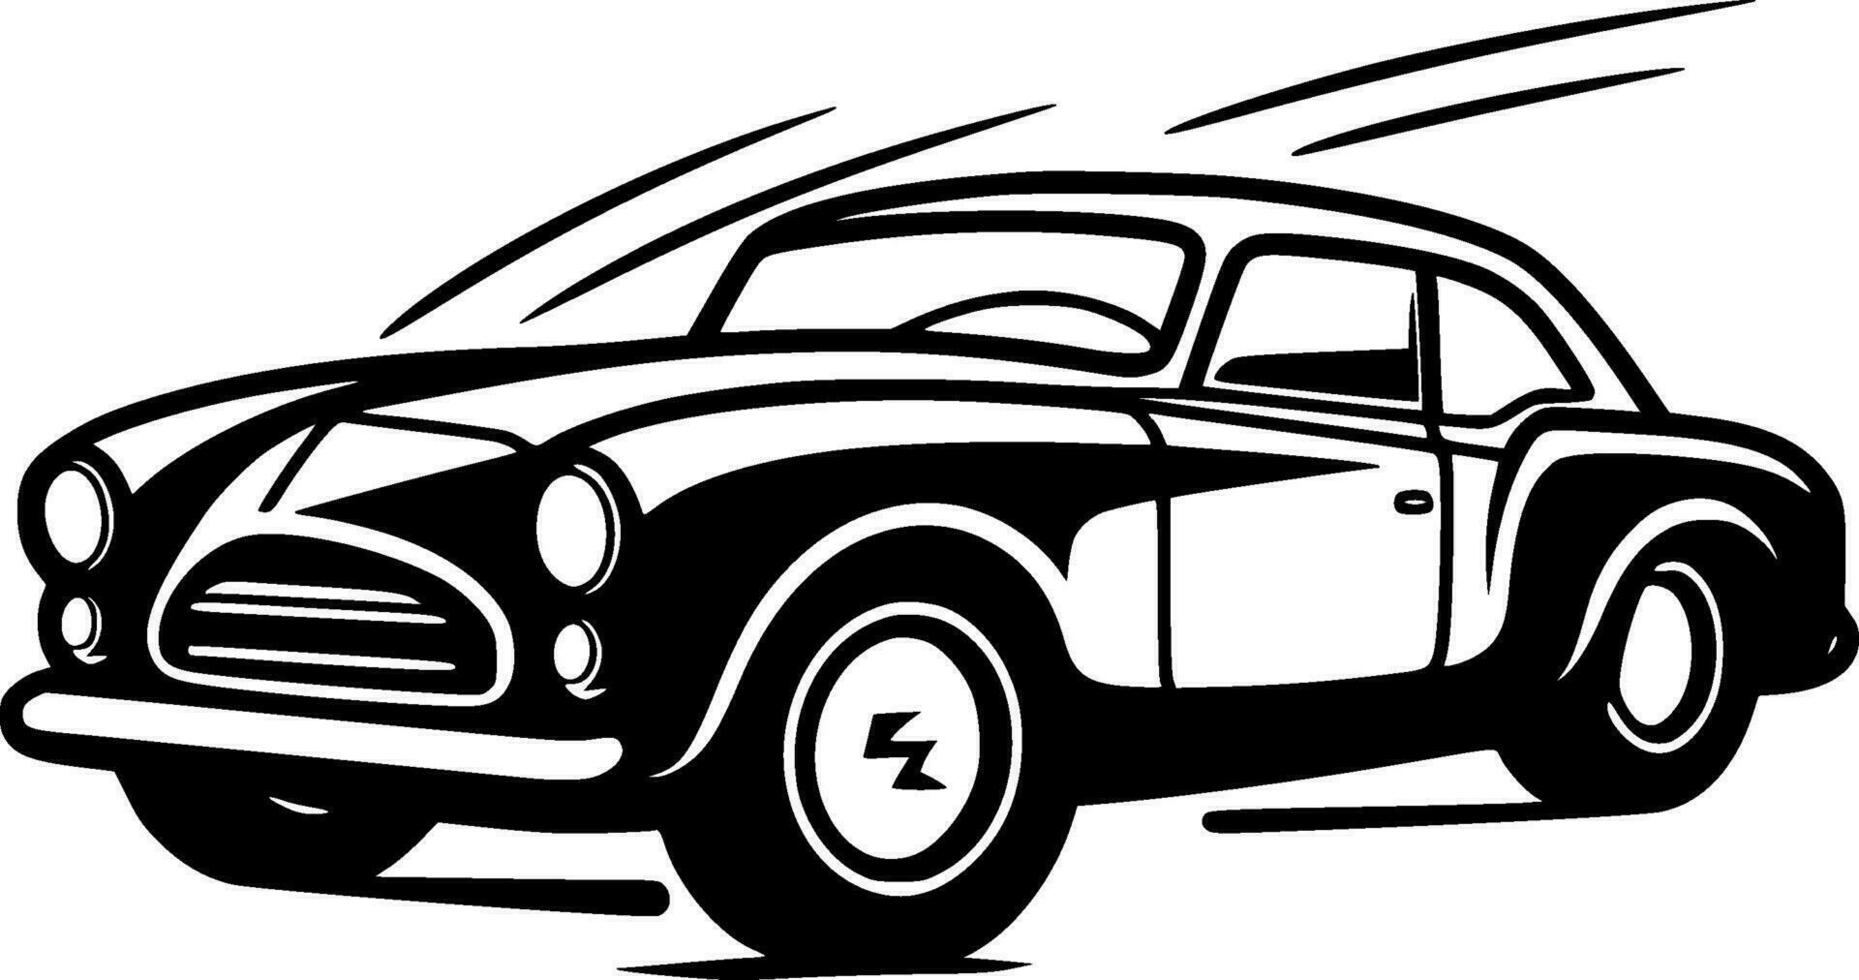 bil - minimalistisk och platt logotyp - vektor illustration